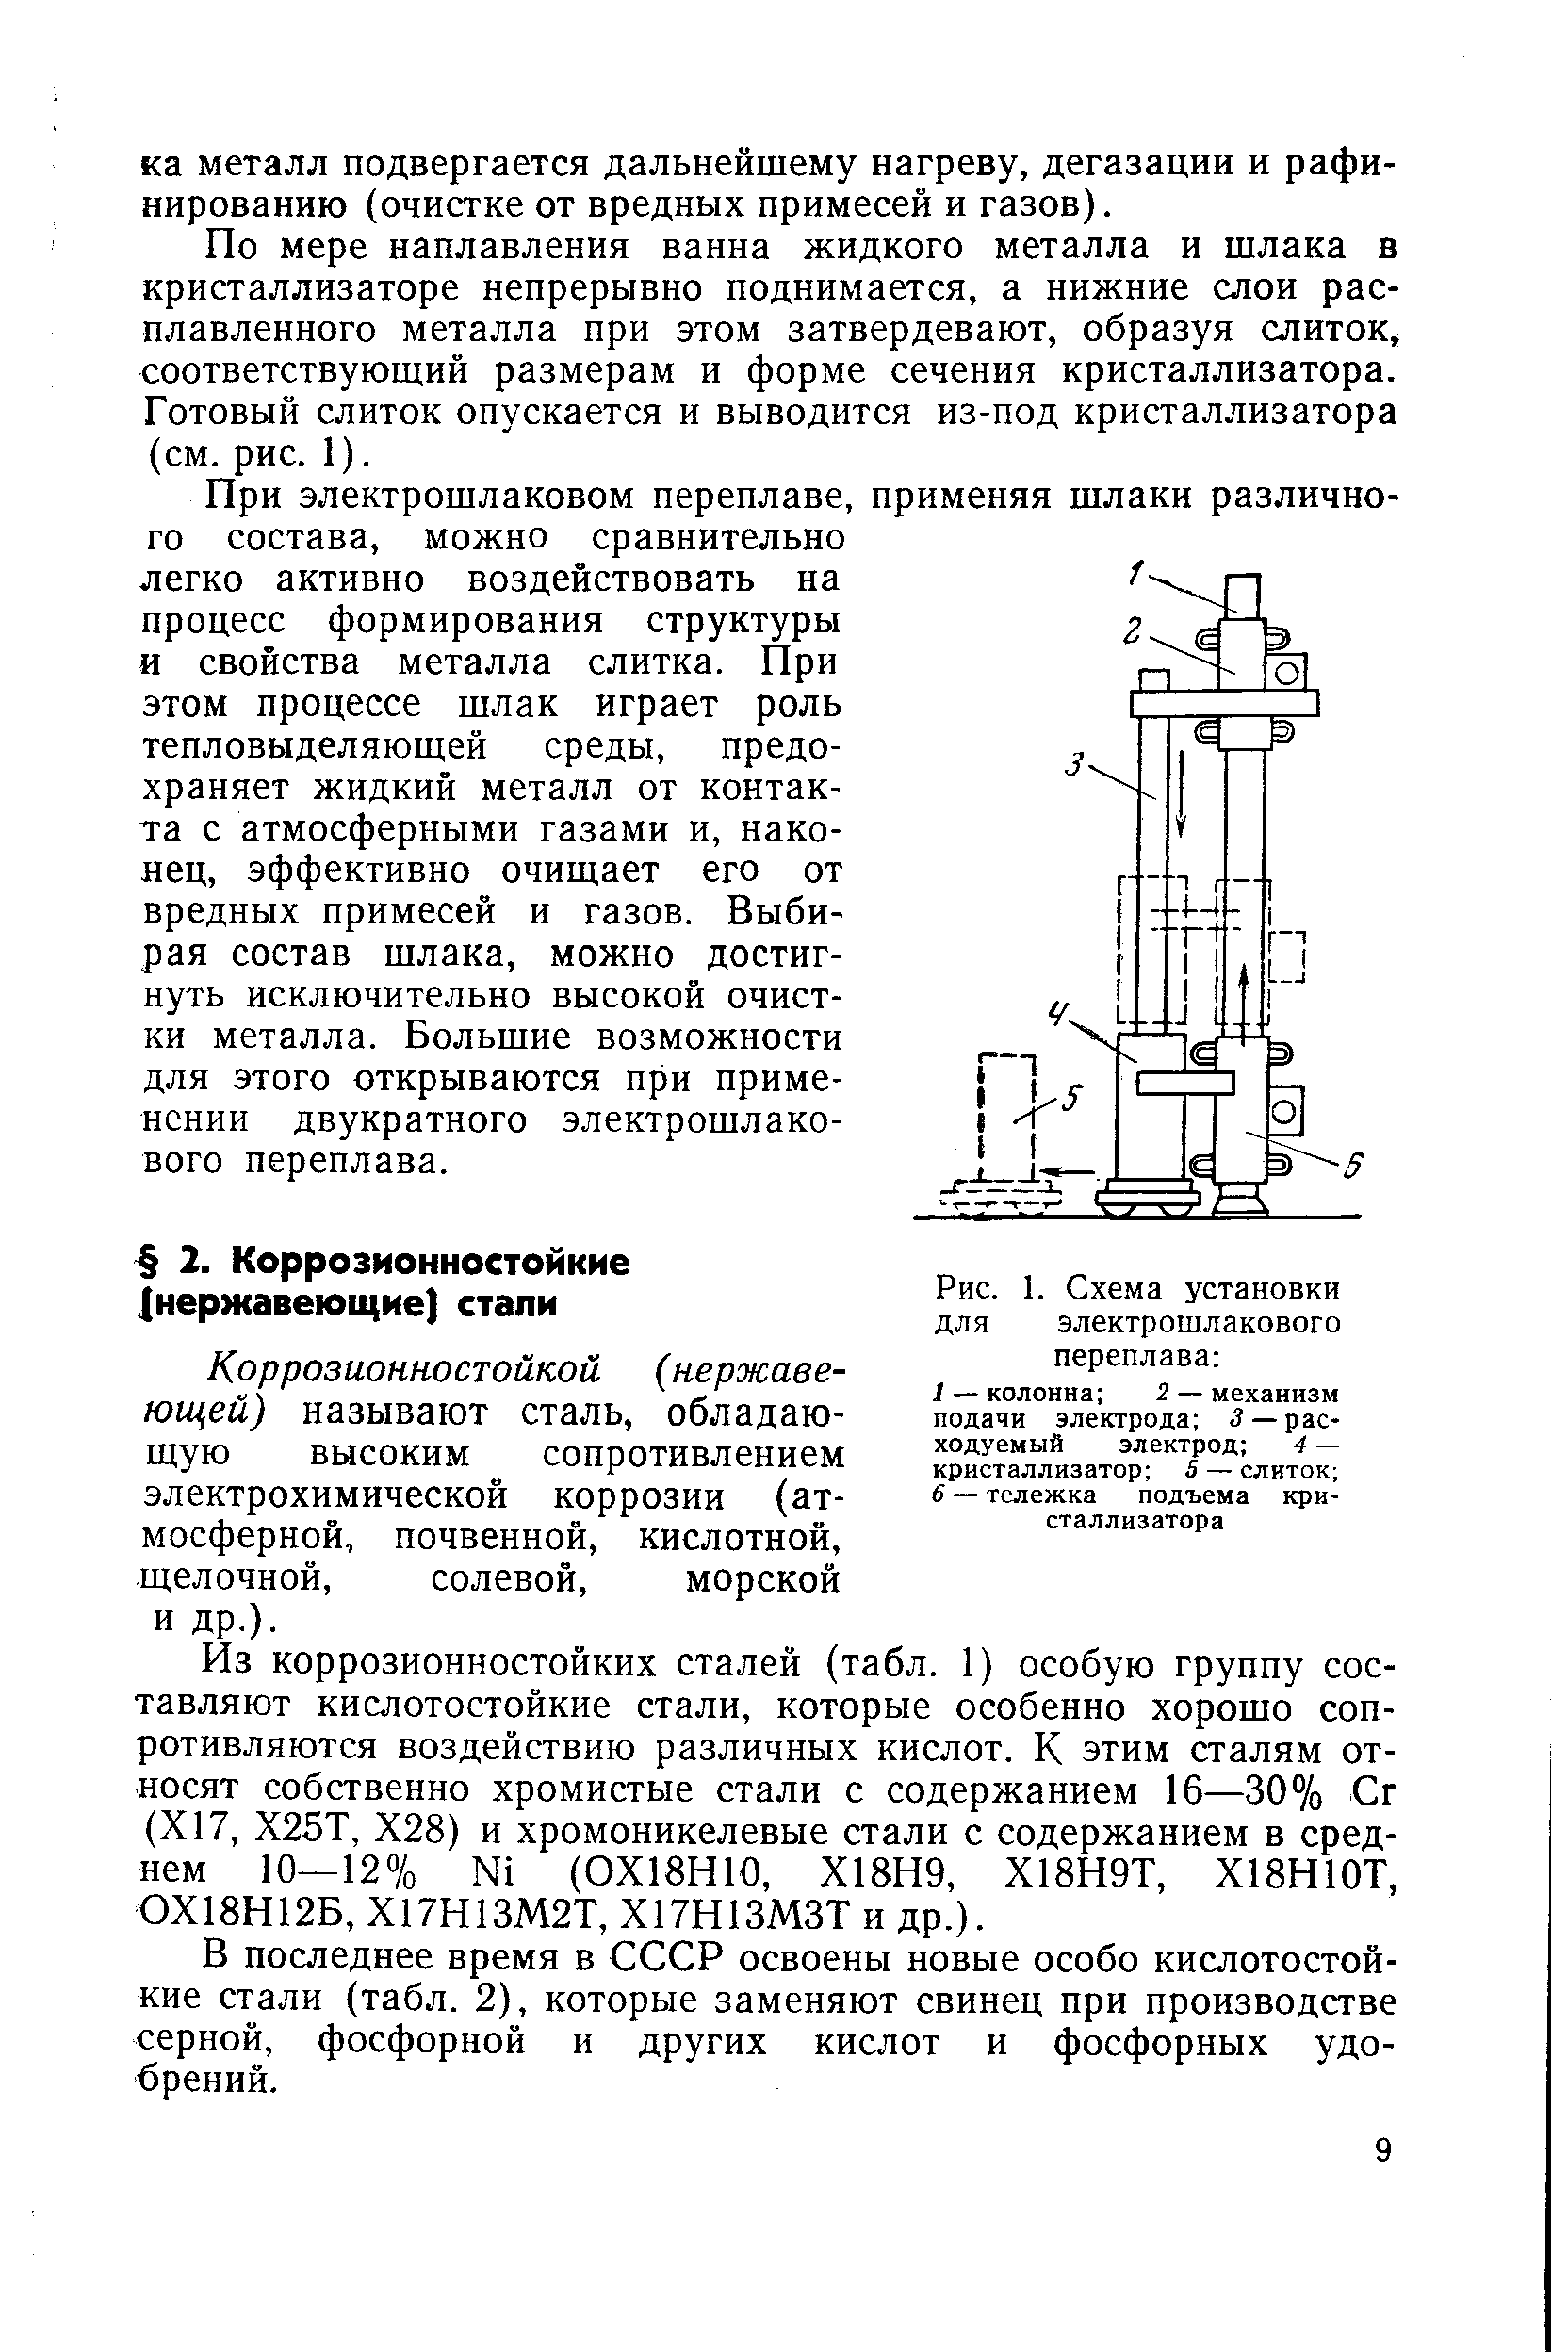 Рис. 1. Схема установки для электрошлакового переплава 
